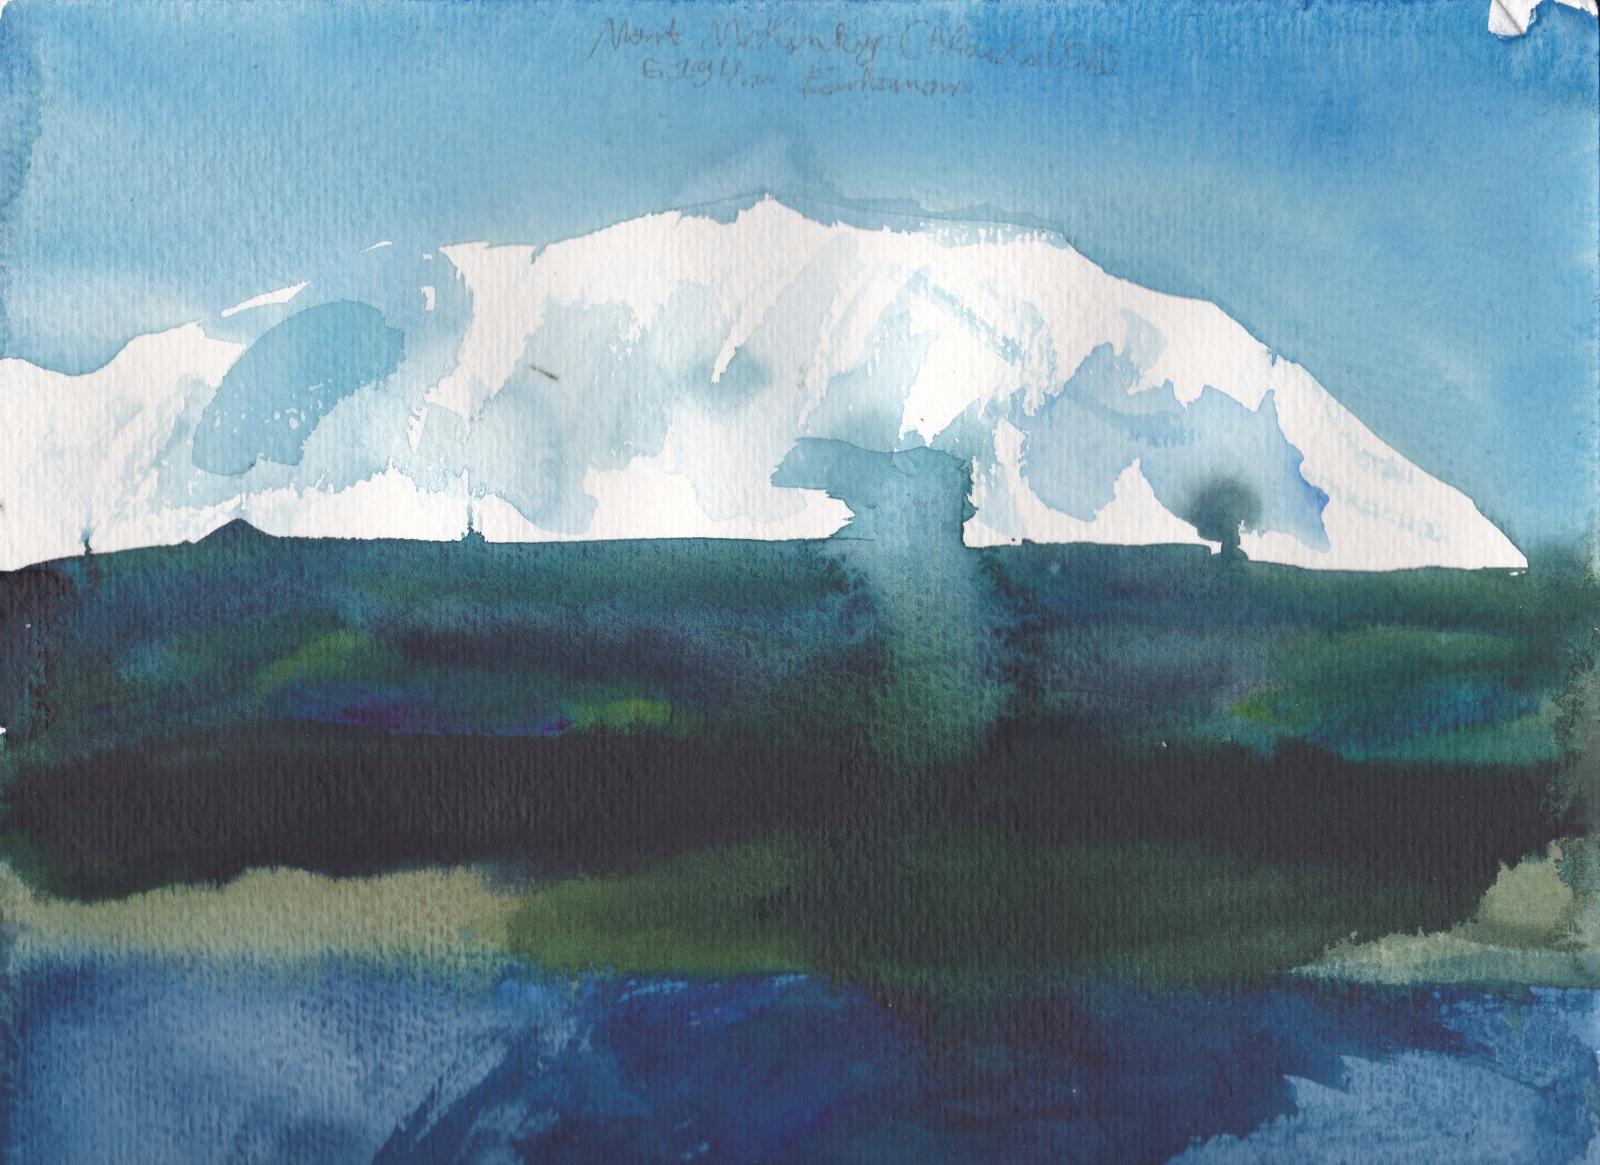 Le Mont McKinley, point culminant de l\'Amérique du Nord à 6194m d\'altitude, et ses gros glaciers puis forets et lacs d\'Alaska.